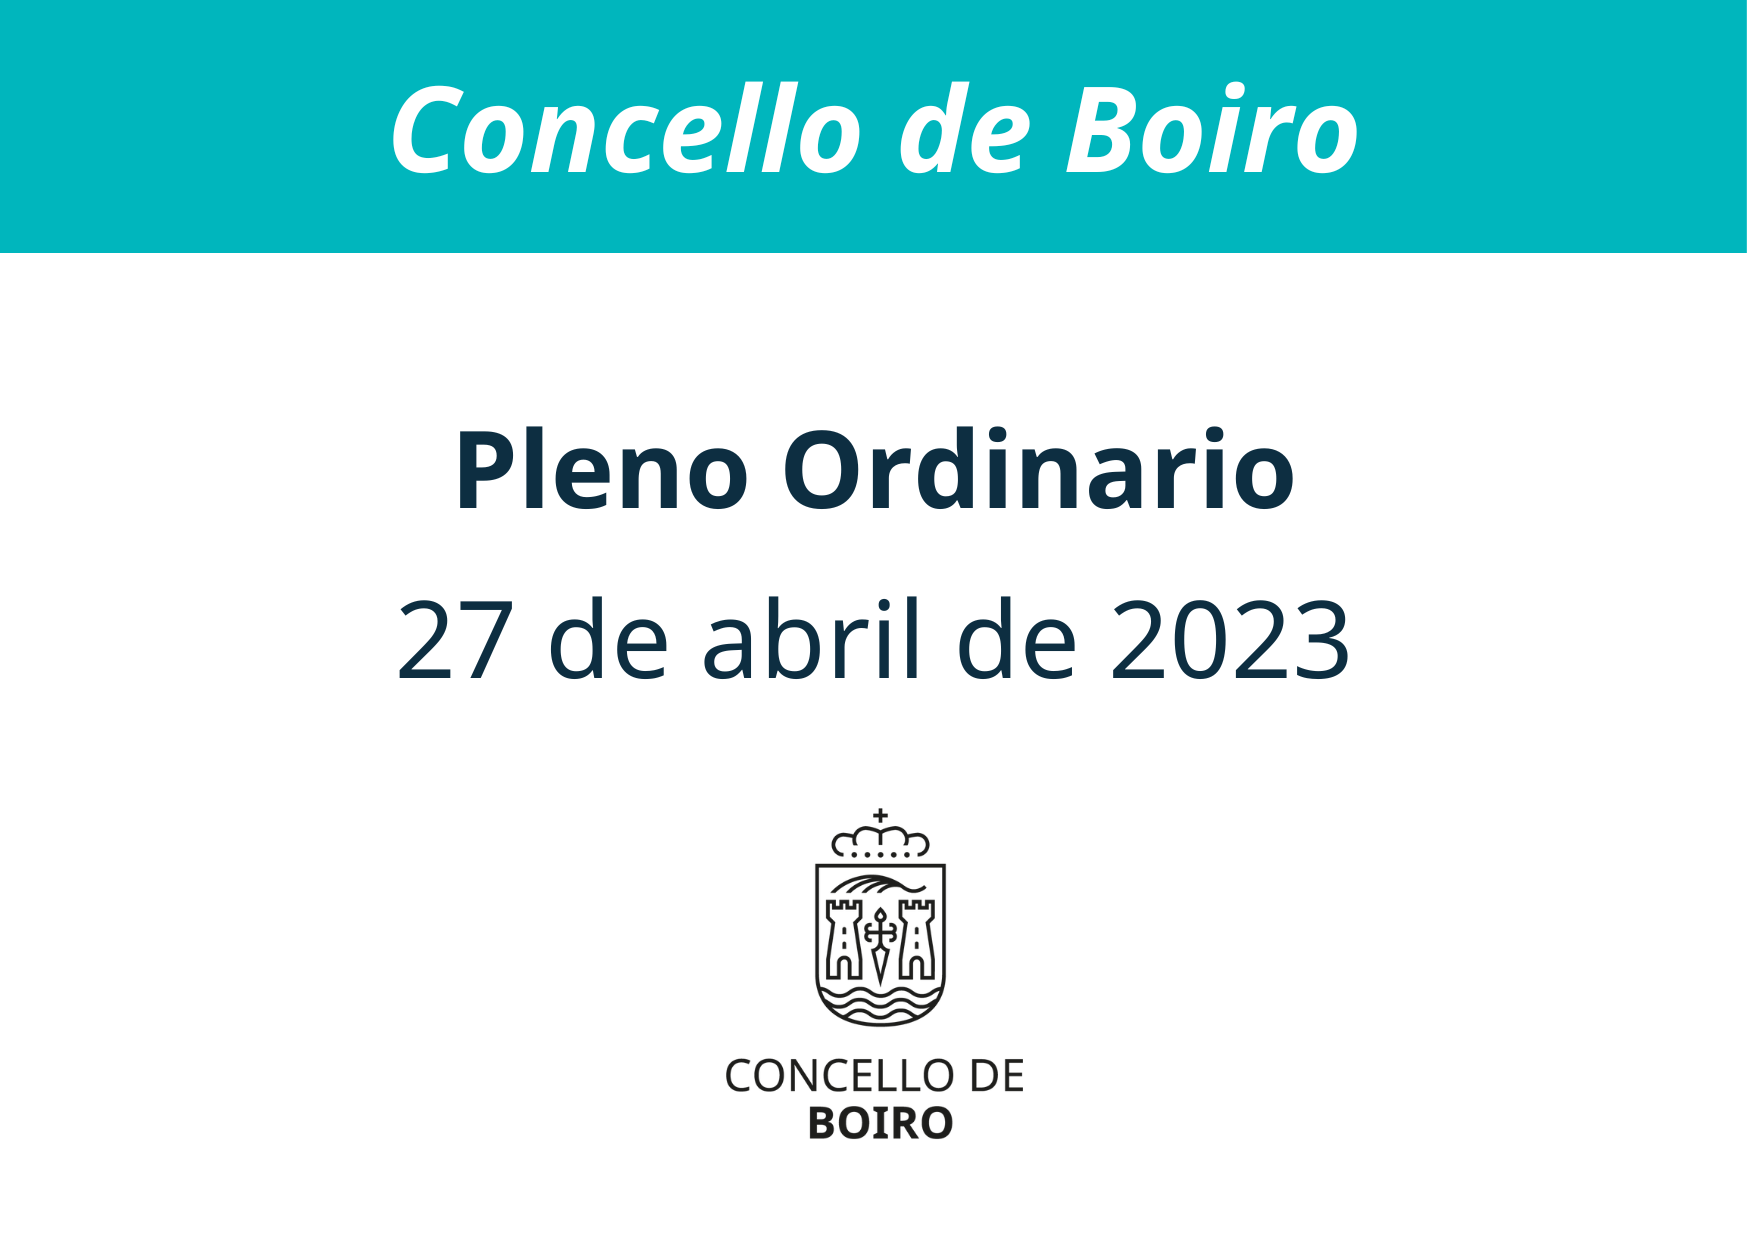 Pleno ordinario do 27 de abril de 2023 | Concello de Boiro 